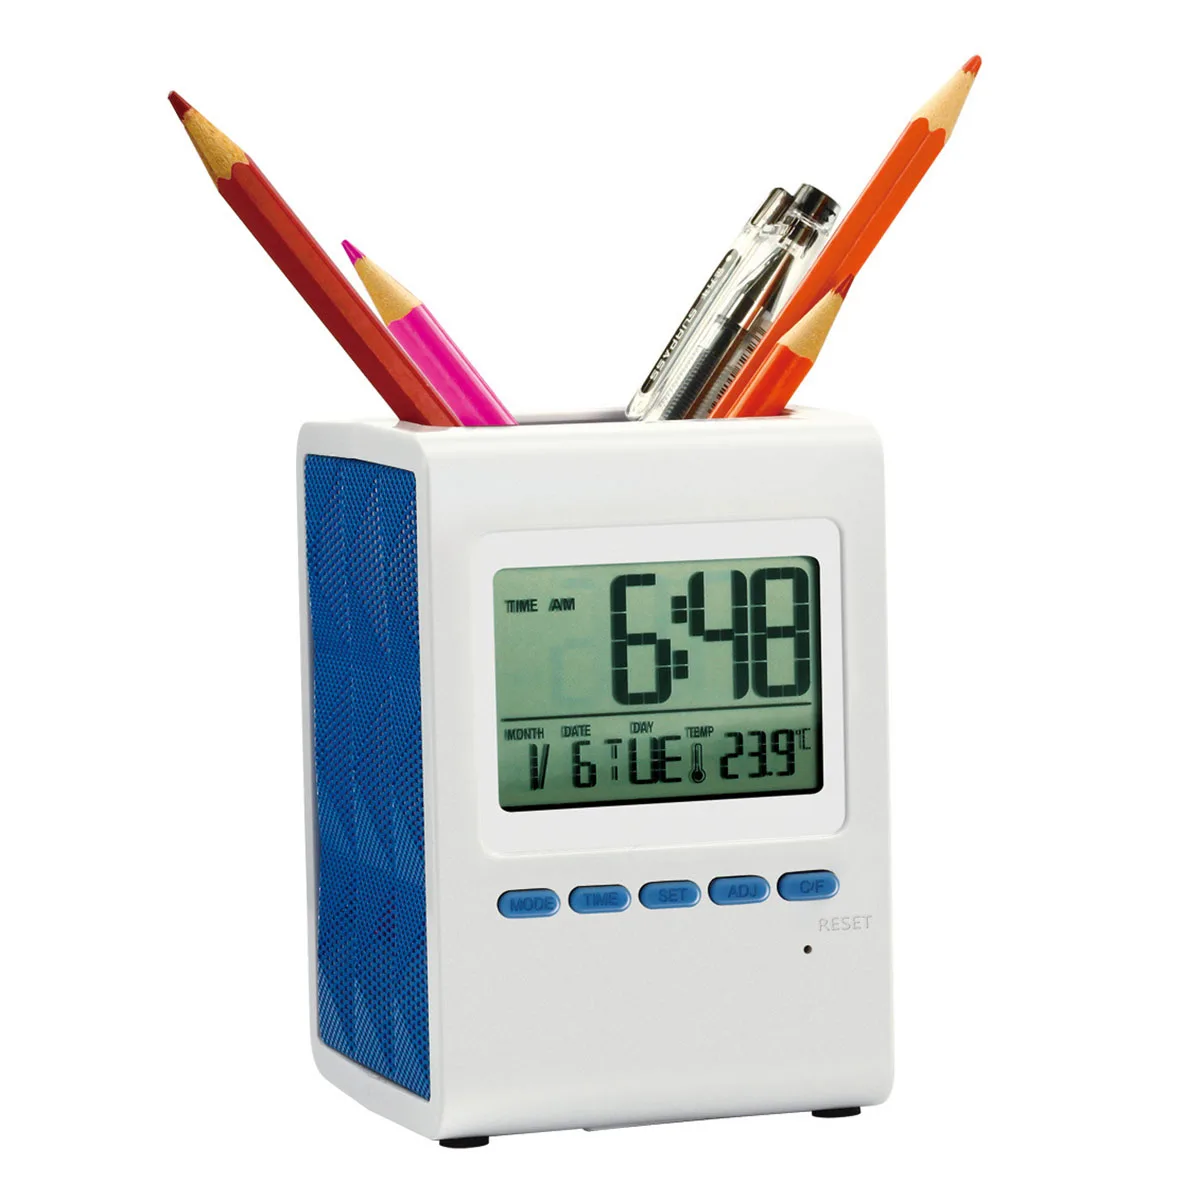 Универсальный электронный держатель ручки со временем музыкальный будильник